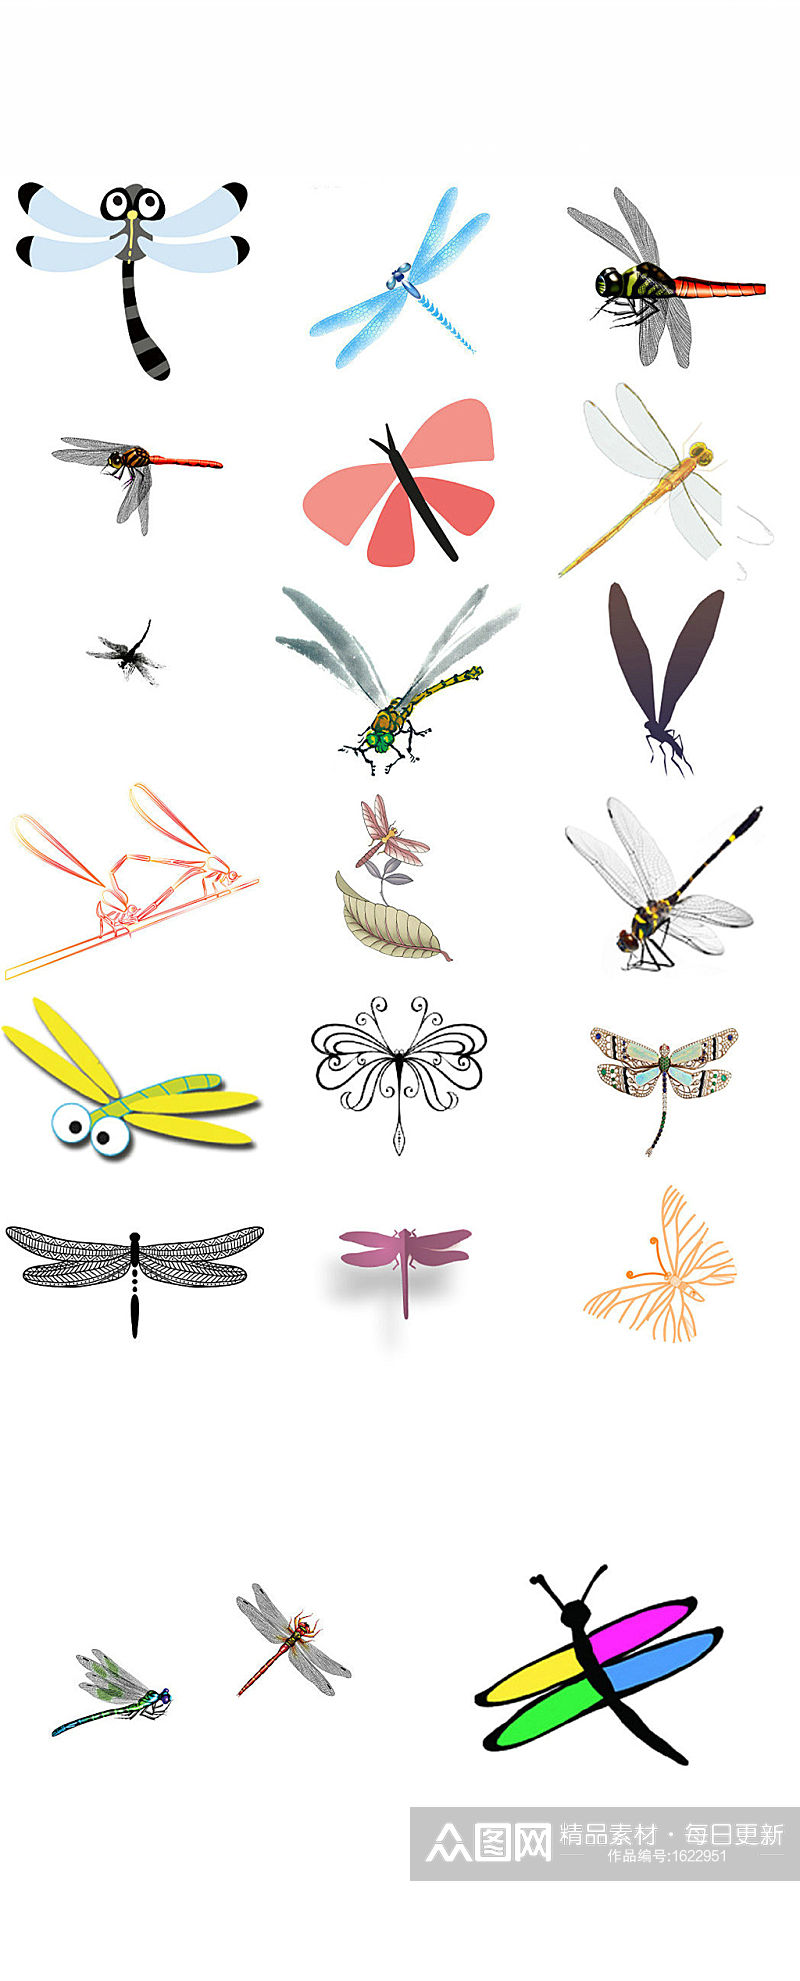 卡通动物昆虫蜻蜓形象设计素材素材